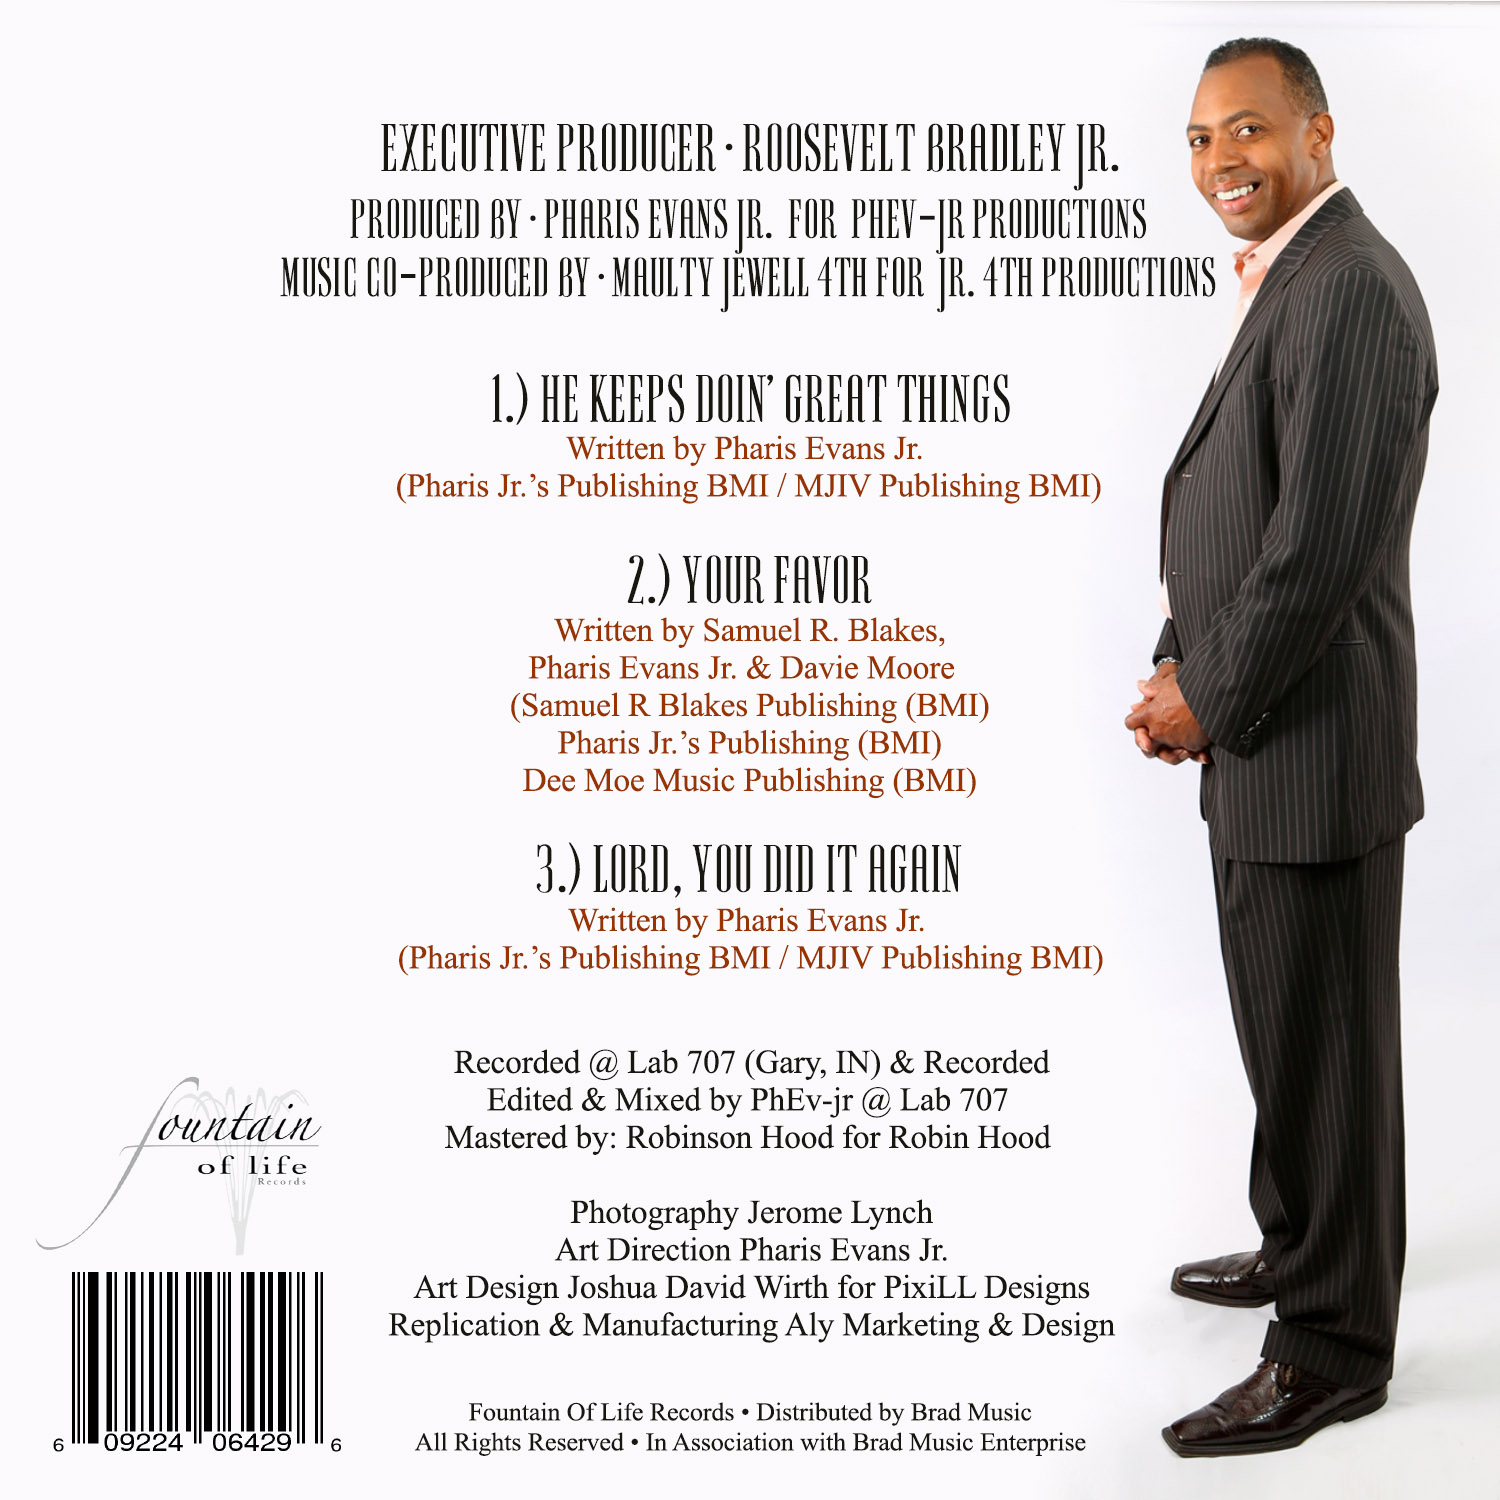 Roosevelt Bradley CD Cover Back.jpg